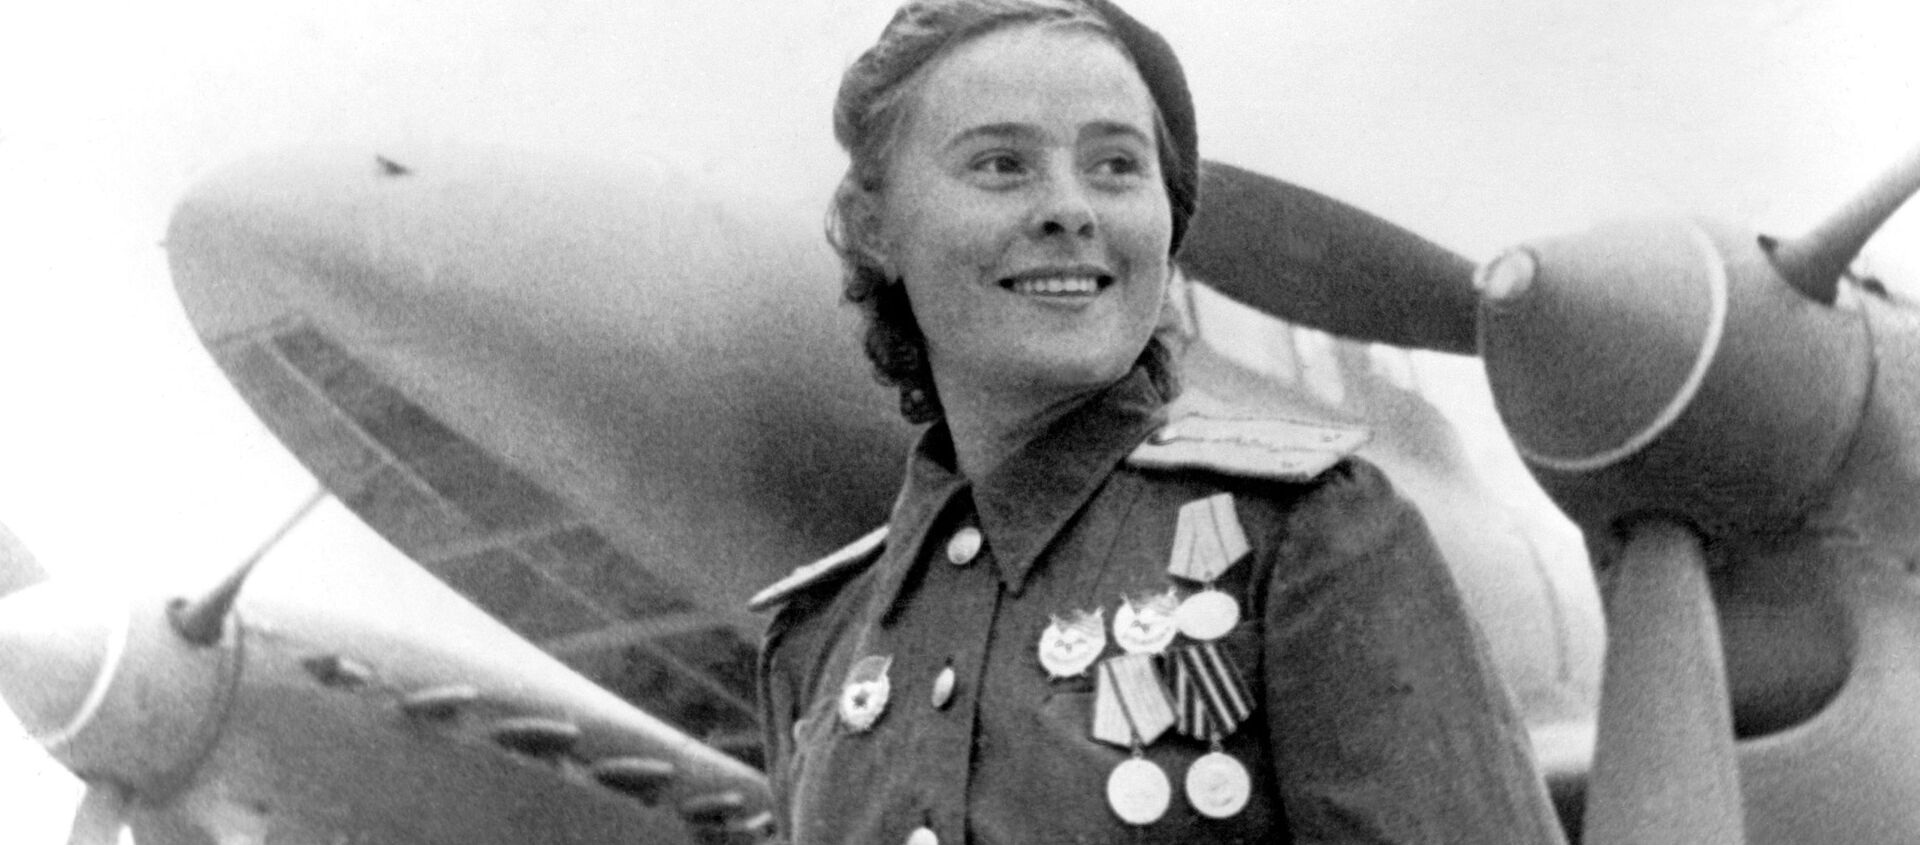 Operadoras de radio, guerrilleras y francotiradoras: el rostro femenino de la guerra - Sputnik Mundo, 1920, 05.05.2017